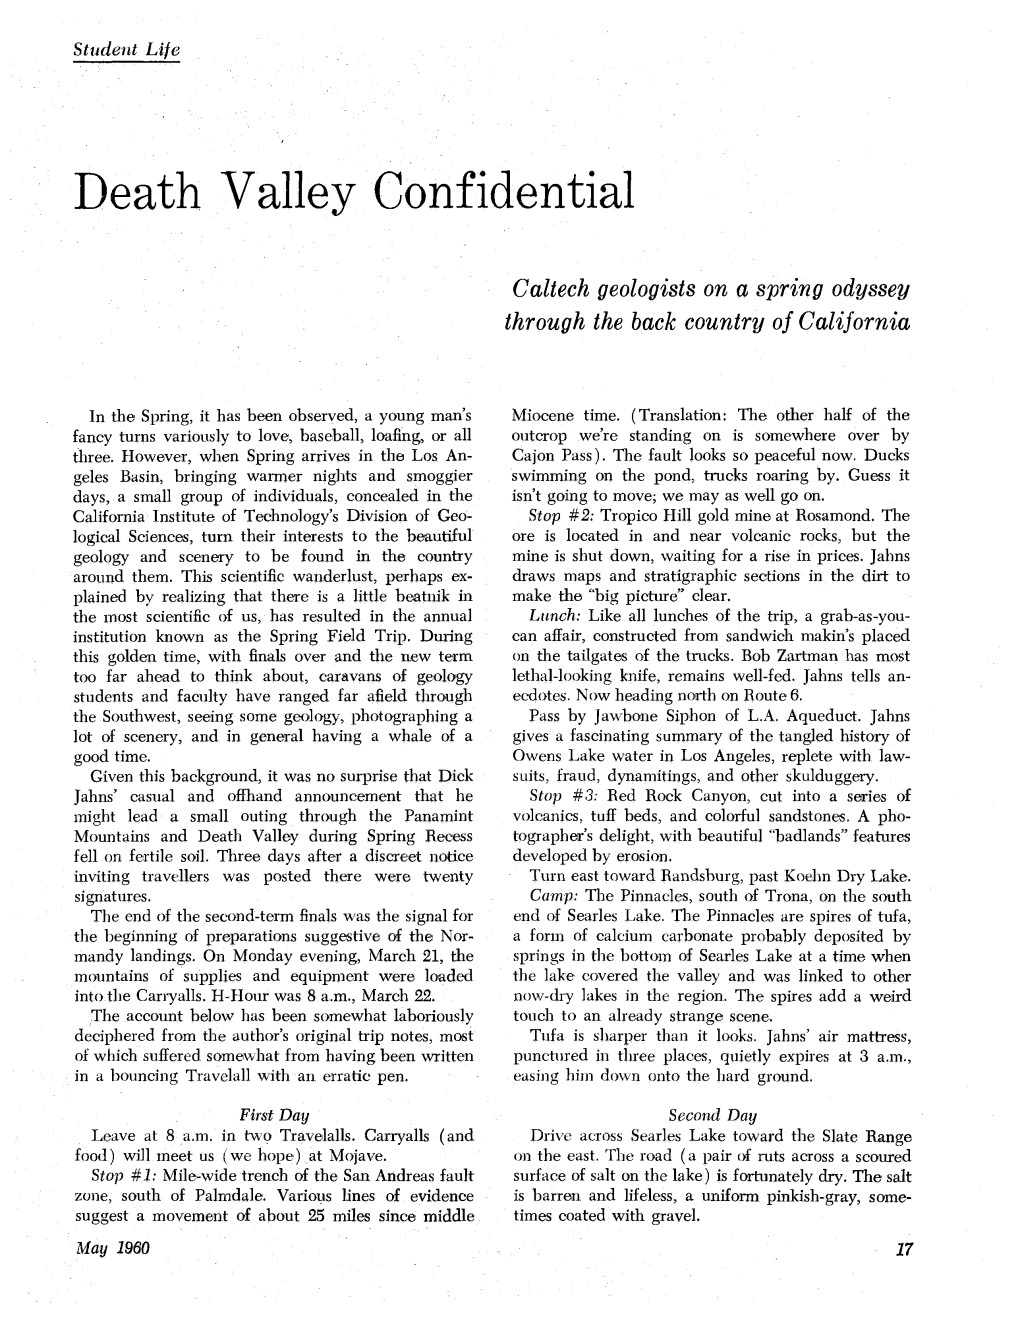 Death Valley Confidential